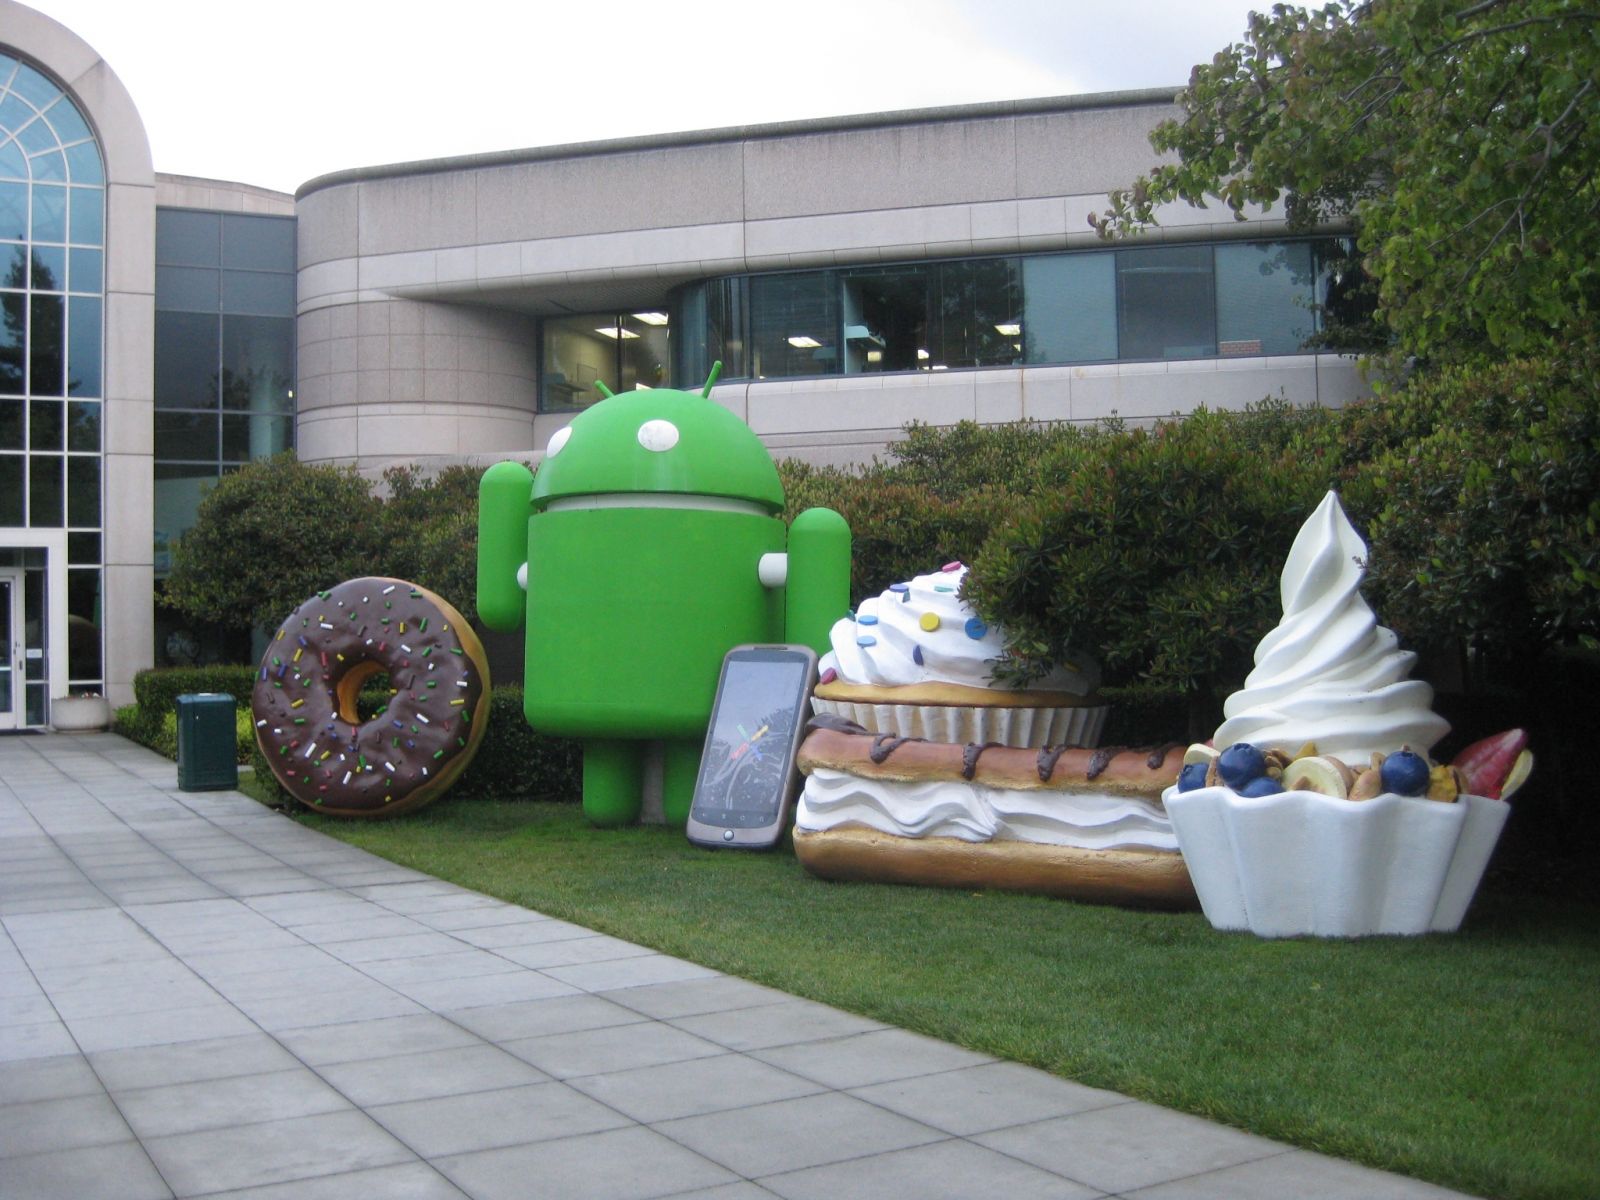 Android N 竟是這種甜品.....小編看完肚子都餓了... | 文章內置圖片